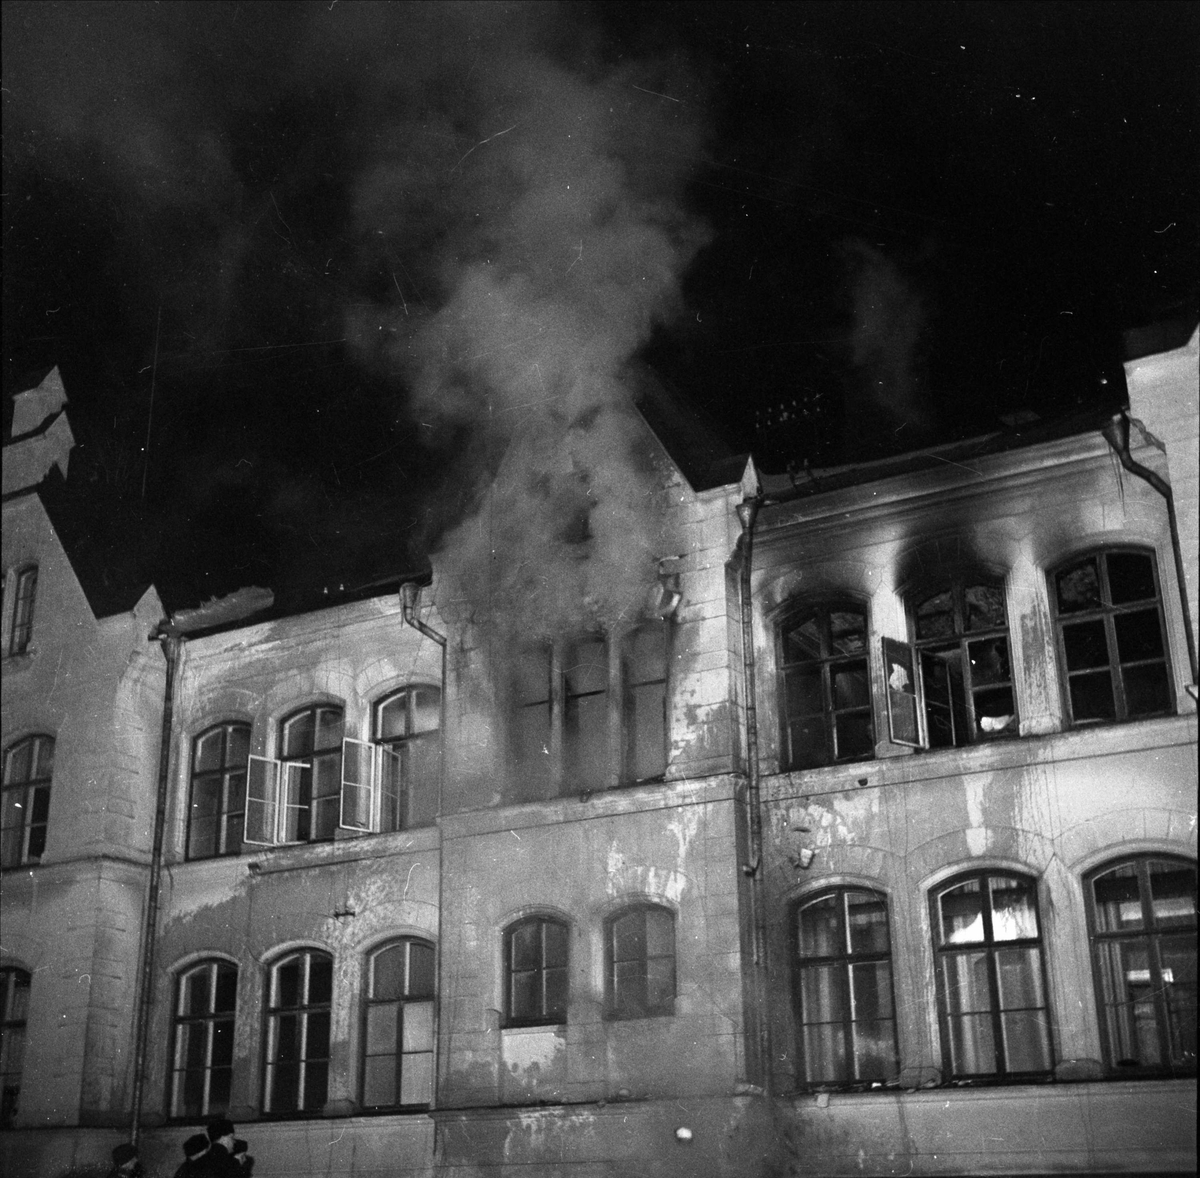 Administrationsbyggnaden vid Ulleråkers sjukhus står i brand, Kronåsen, Uppsala 1947